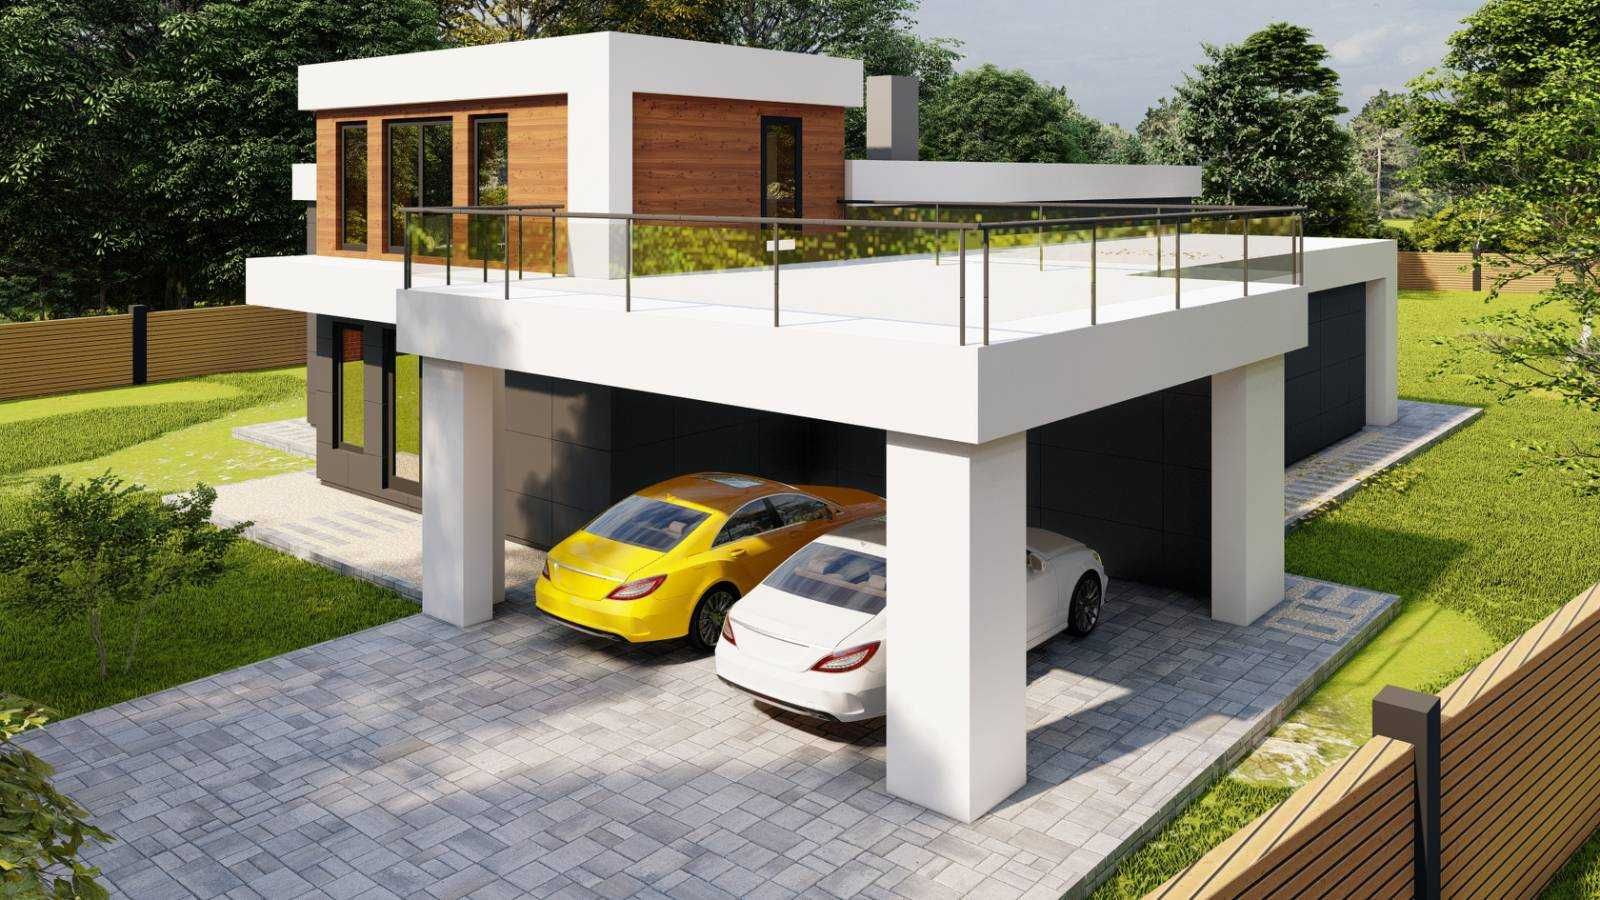 Проект будинку за 60грн/м2. 3D візуалізація, Архітектор, Конструктор